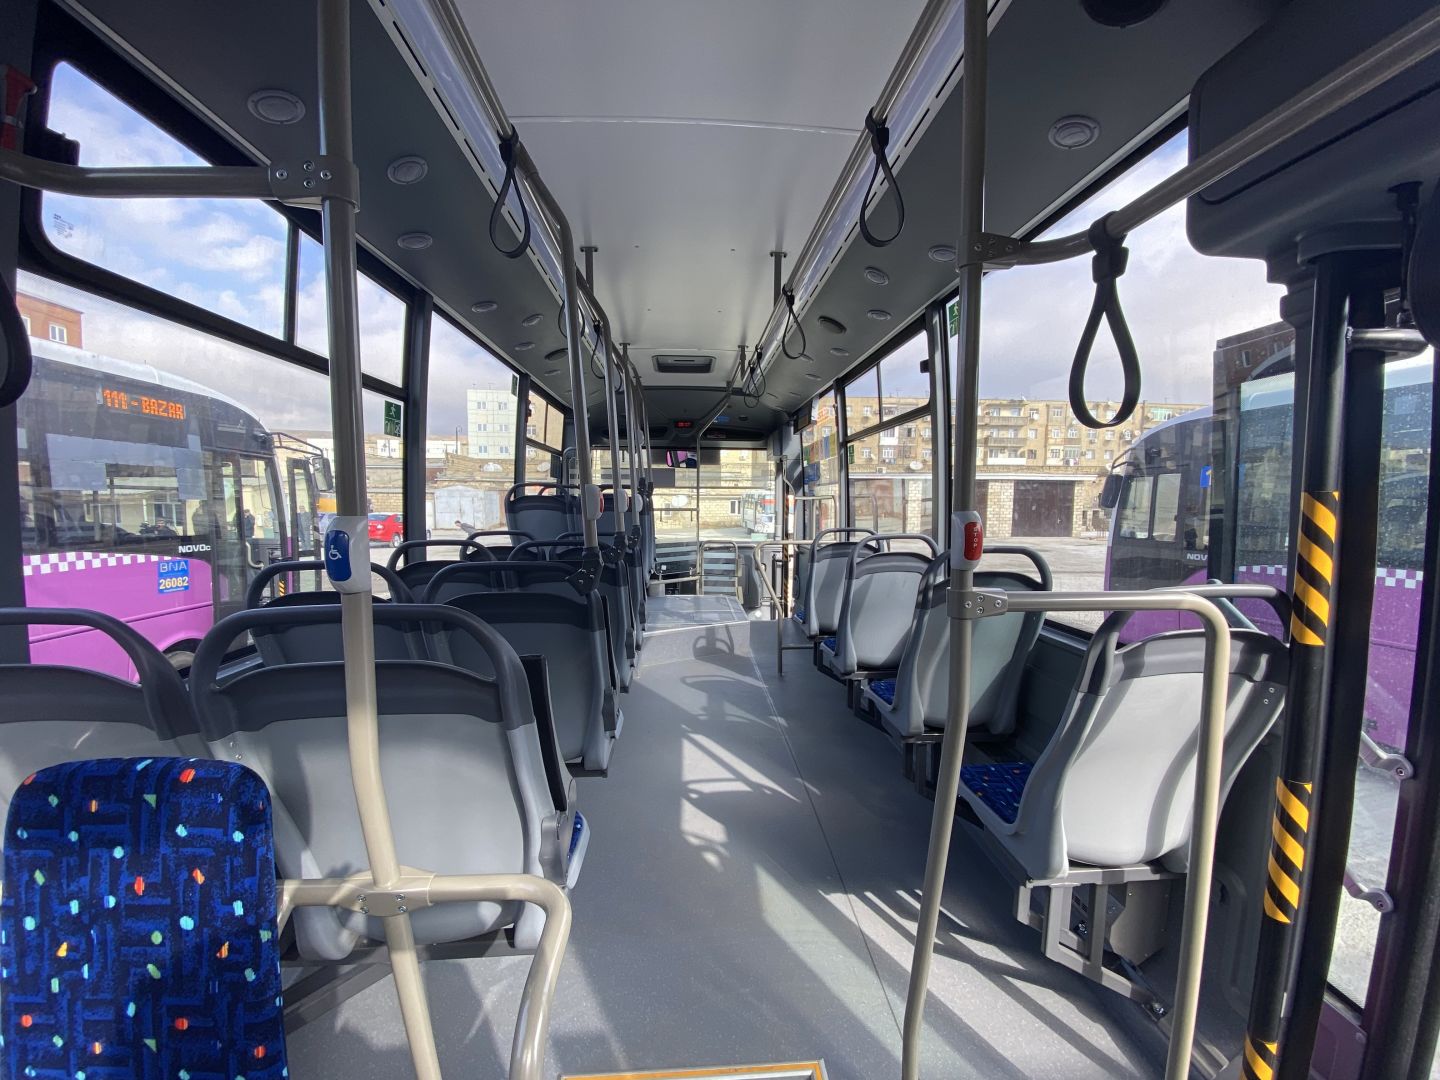 В Баку обновляются автобусы на еще одном маршруте (ФОТО)